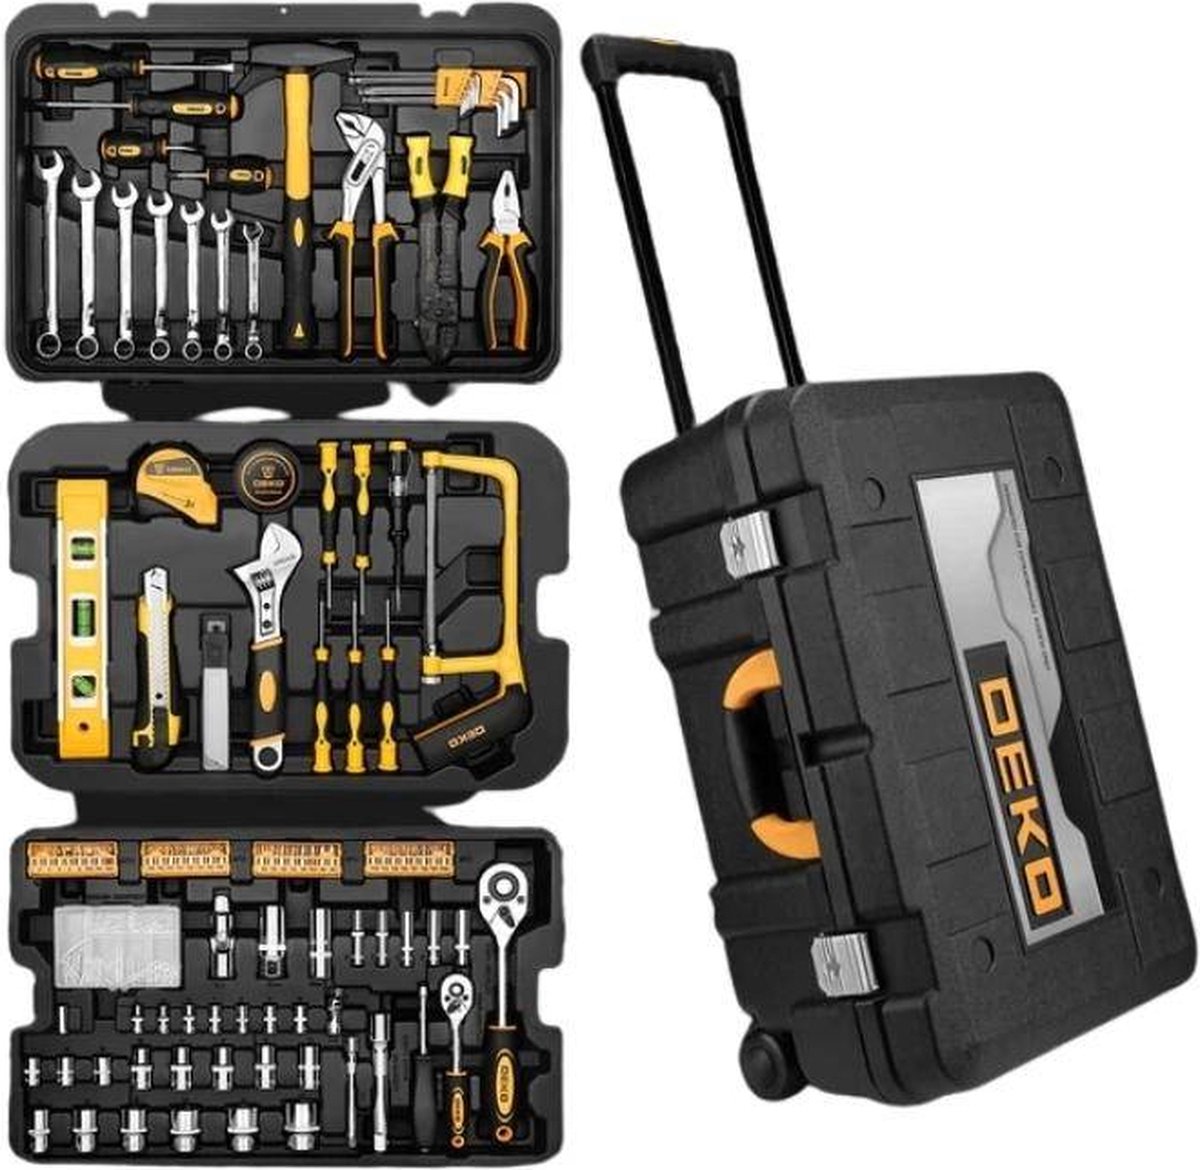 Deko Tools Jeu d'outils à main DKMT258, 258 pièces | bol.com